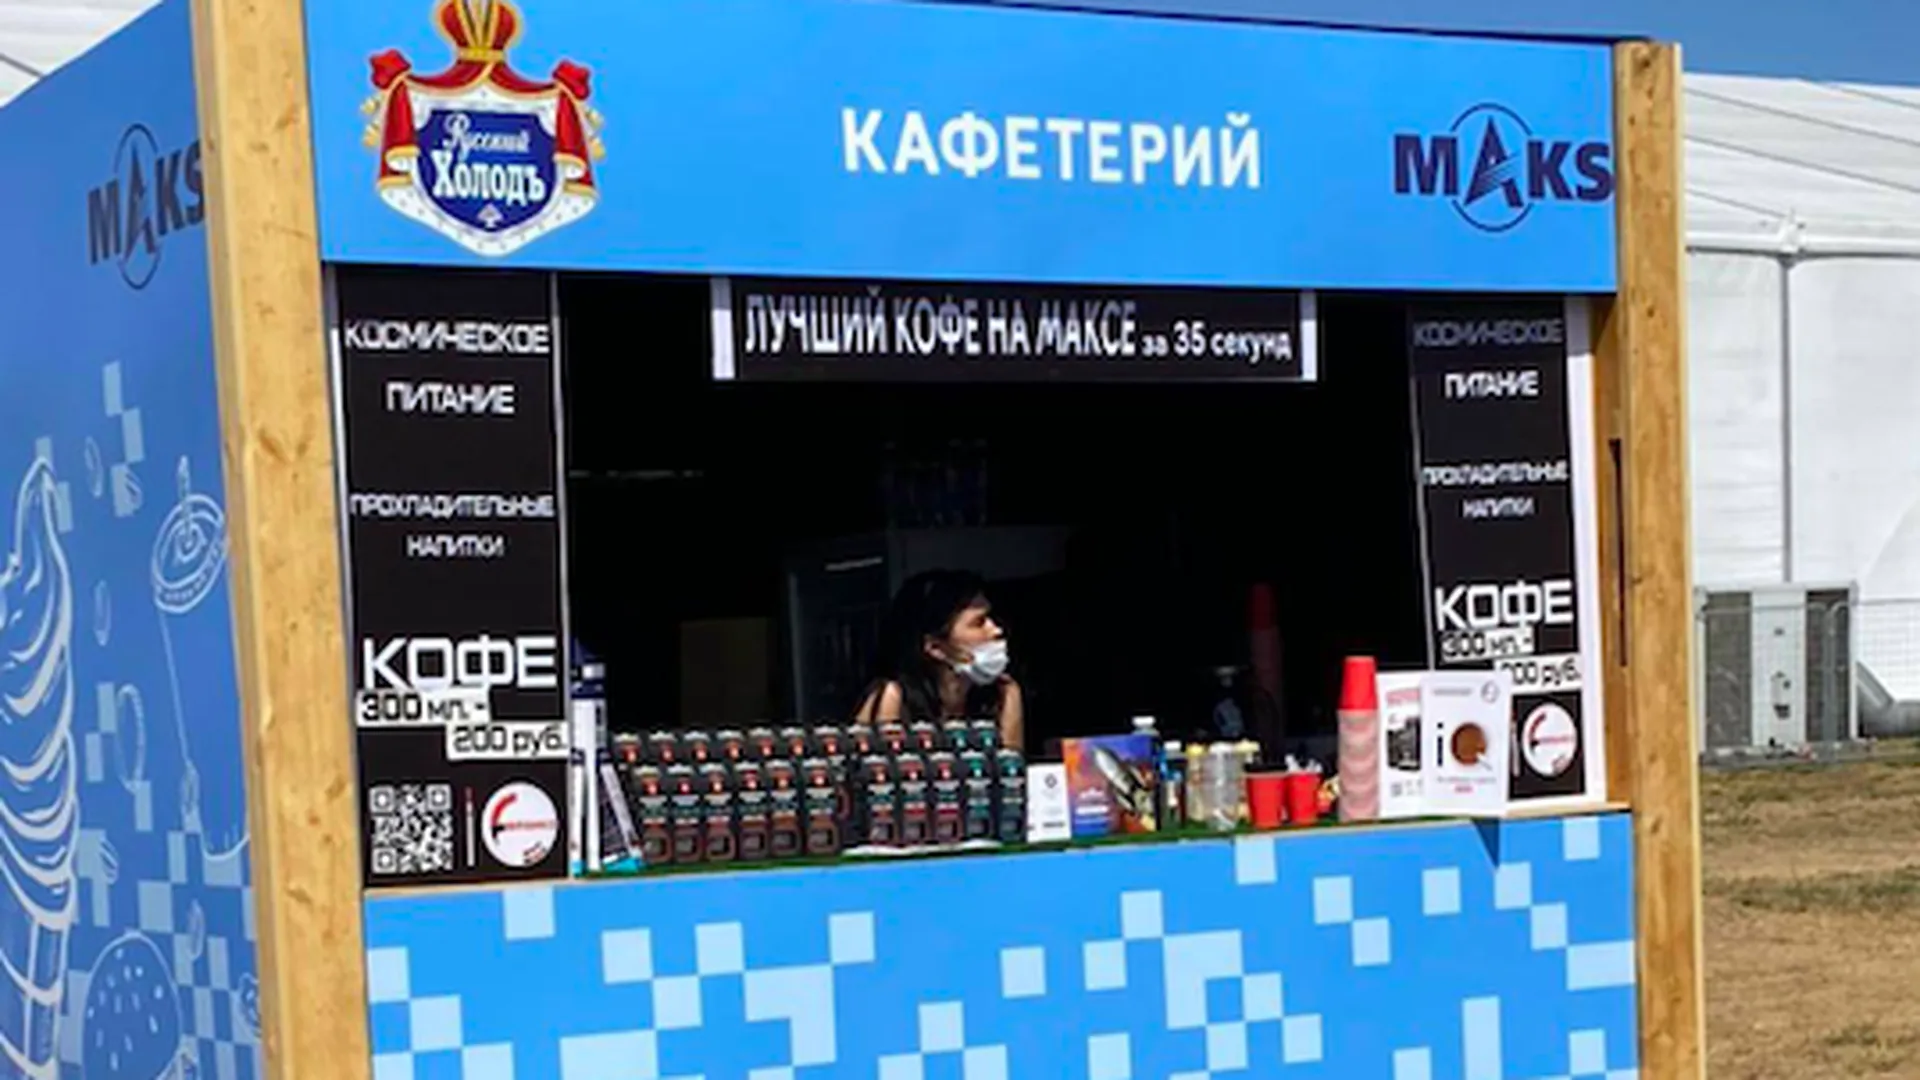 Десятки кафетериев и палаток с сувенирами открыли на МАКС в Жуковском